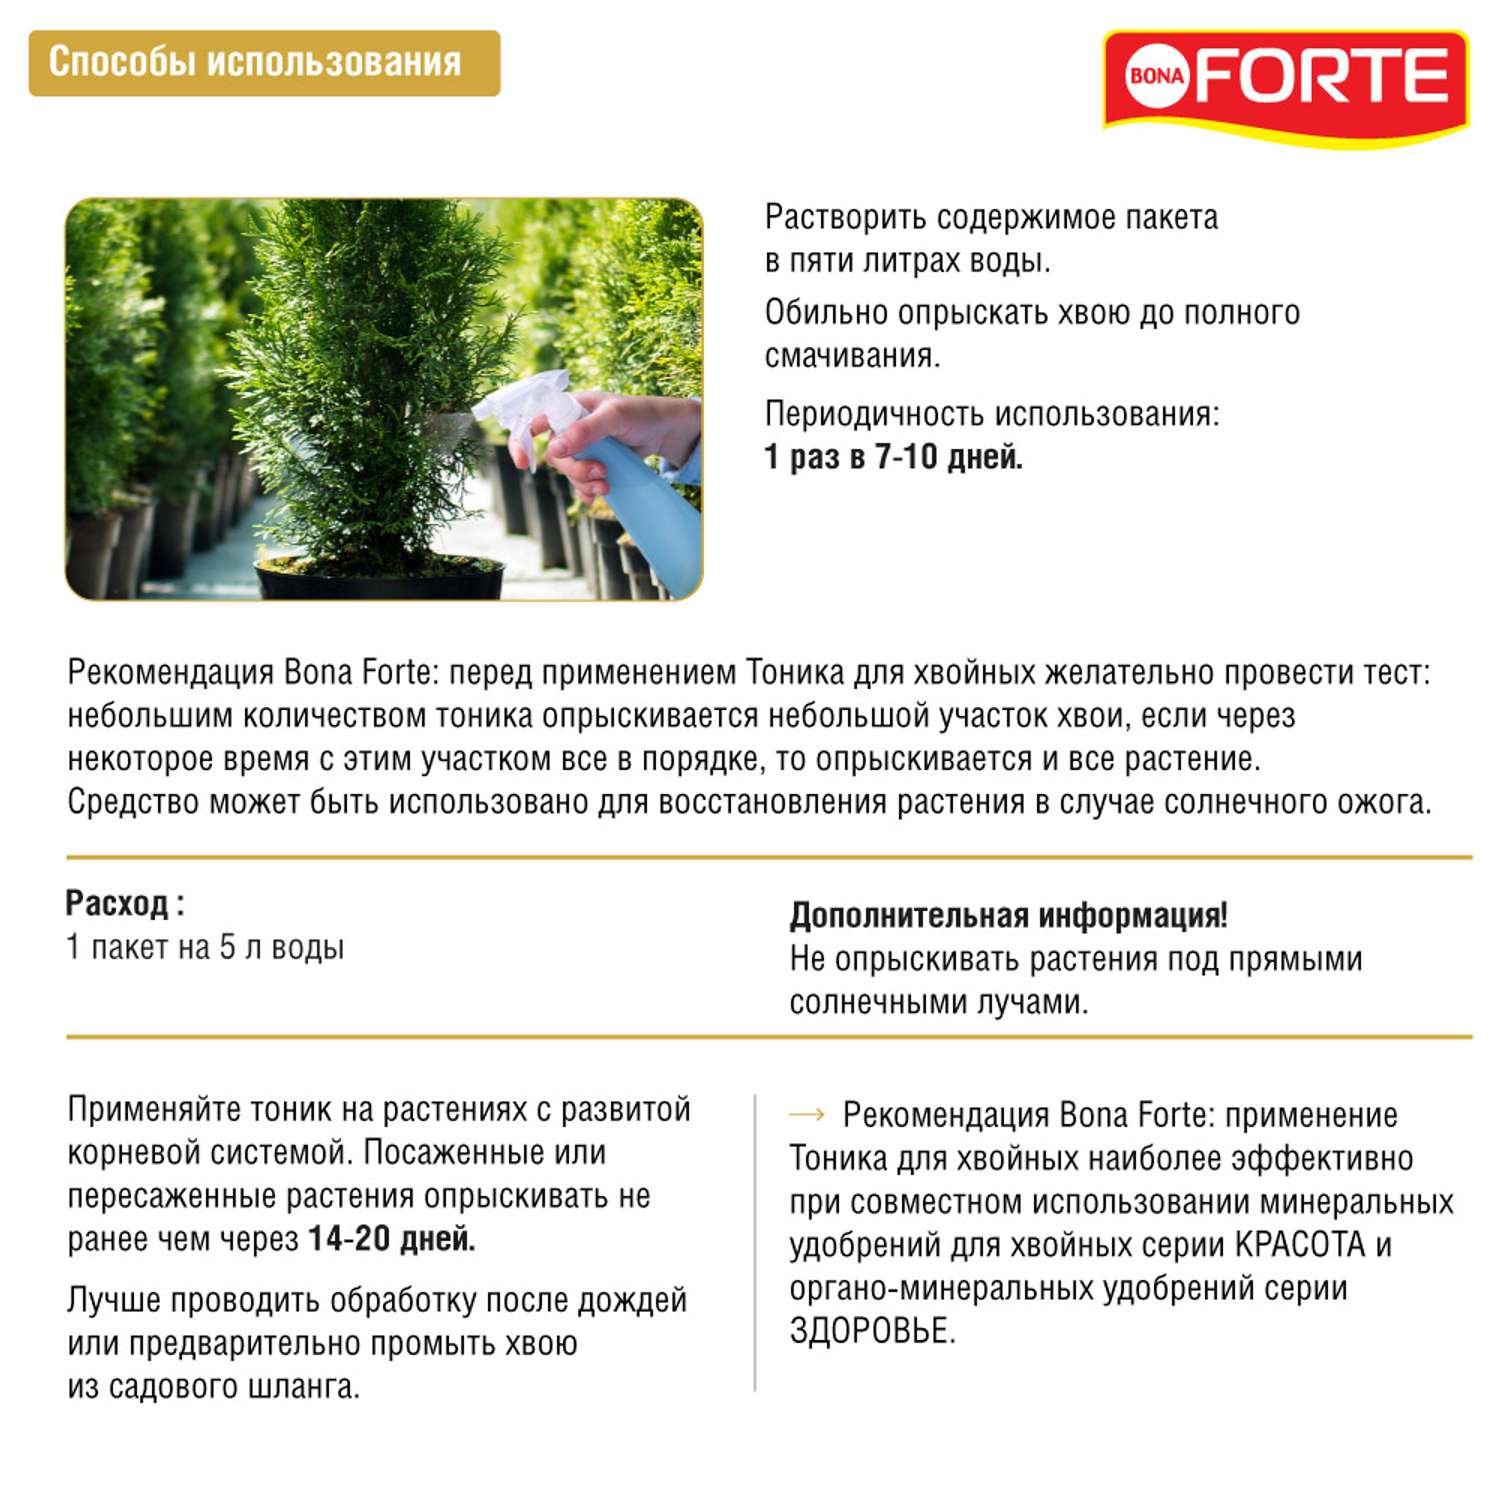 Тоник Bona Forte для хвойных растений сухой 15 г - фото 4